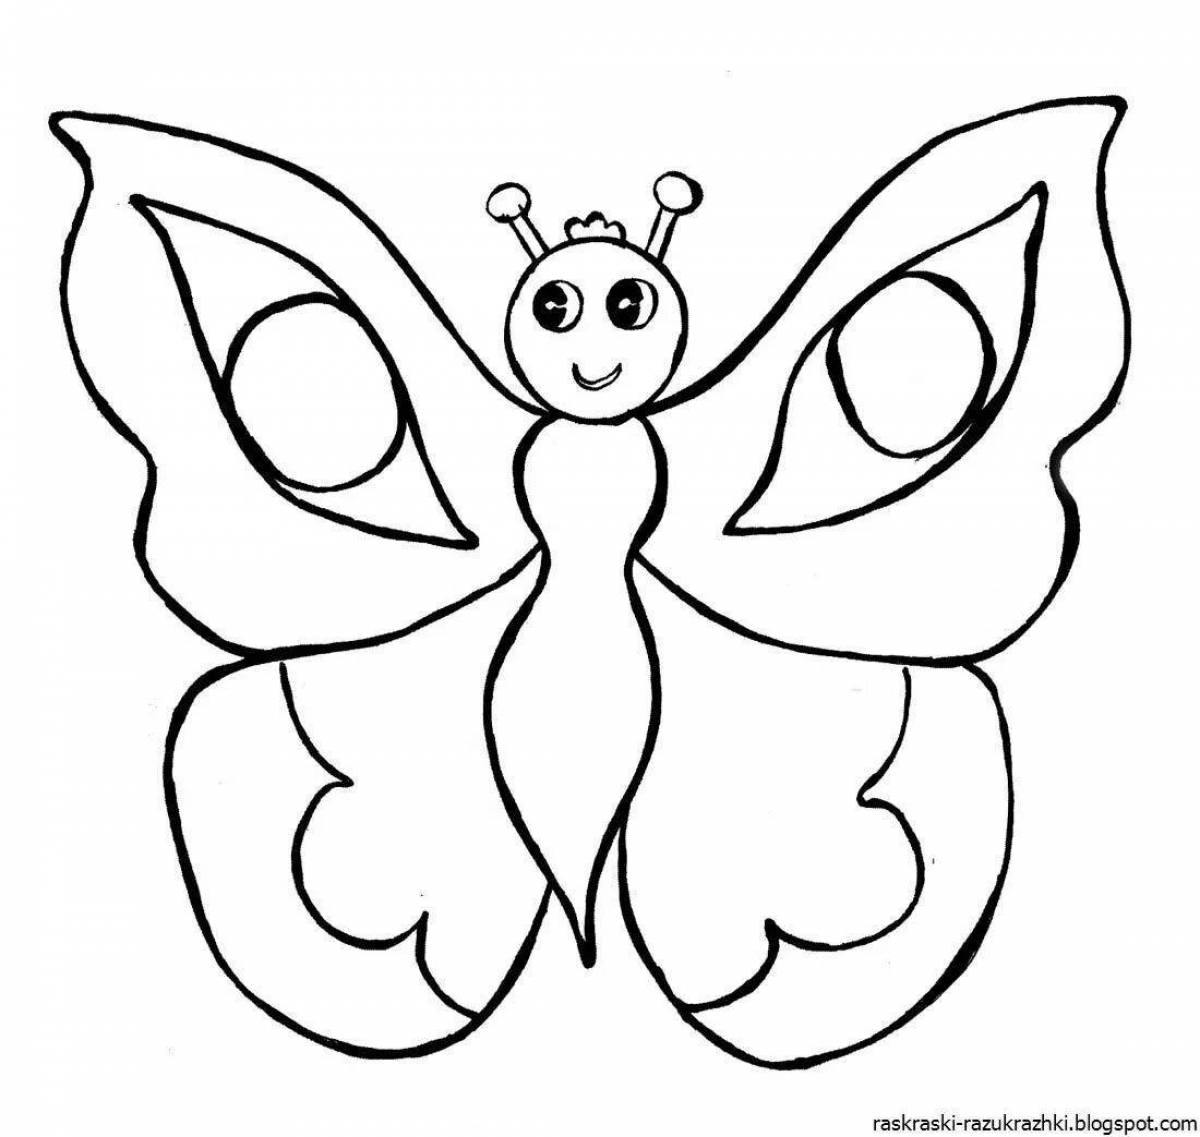 Красочная страница раскраски бабочки для детей 4-5 лет